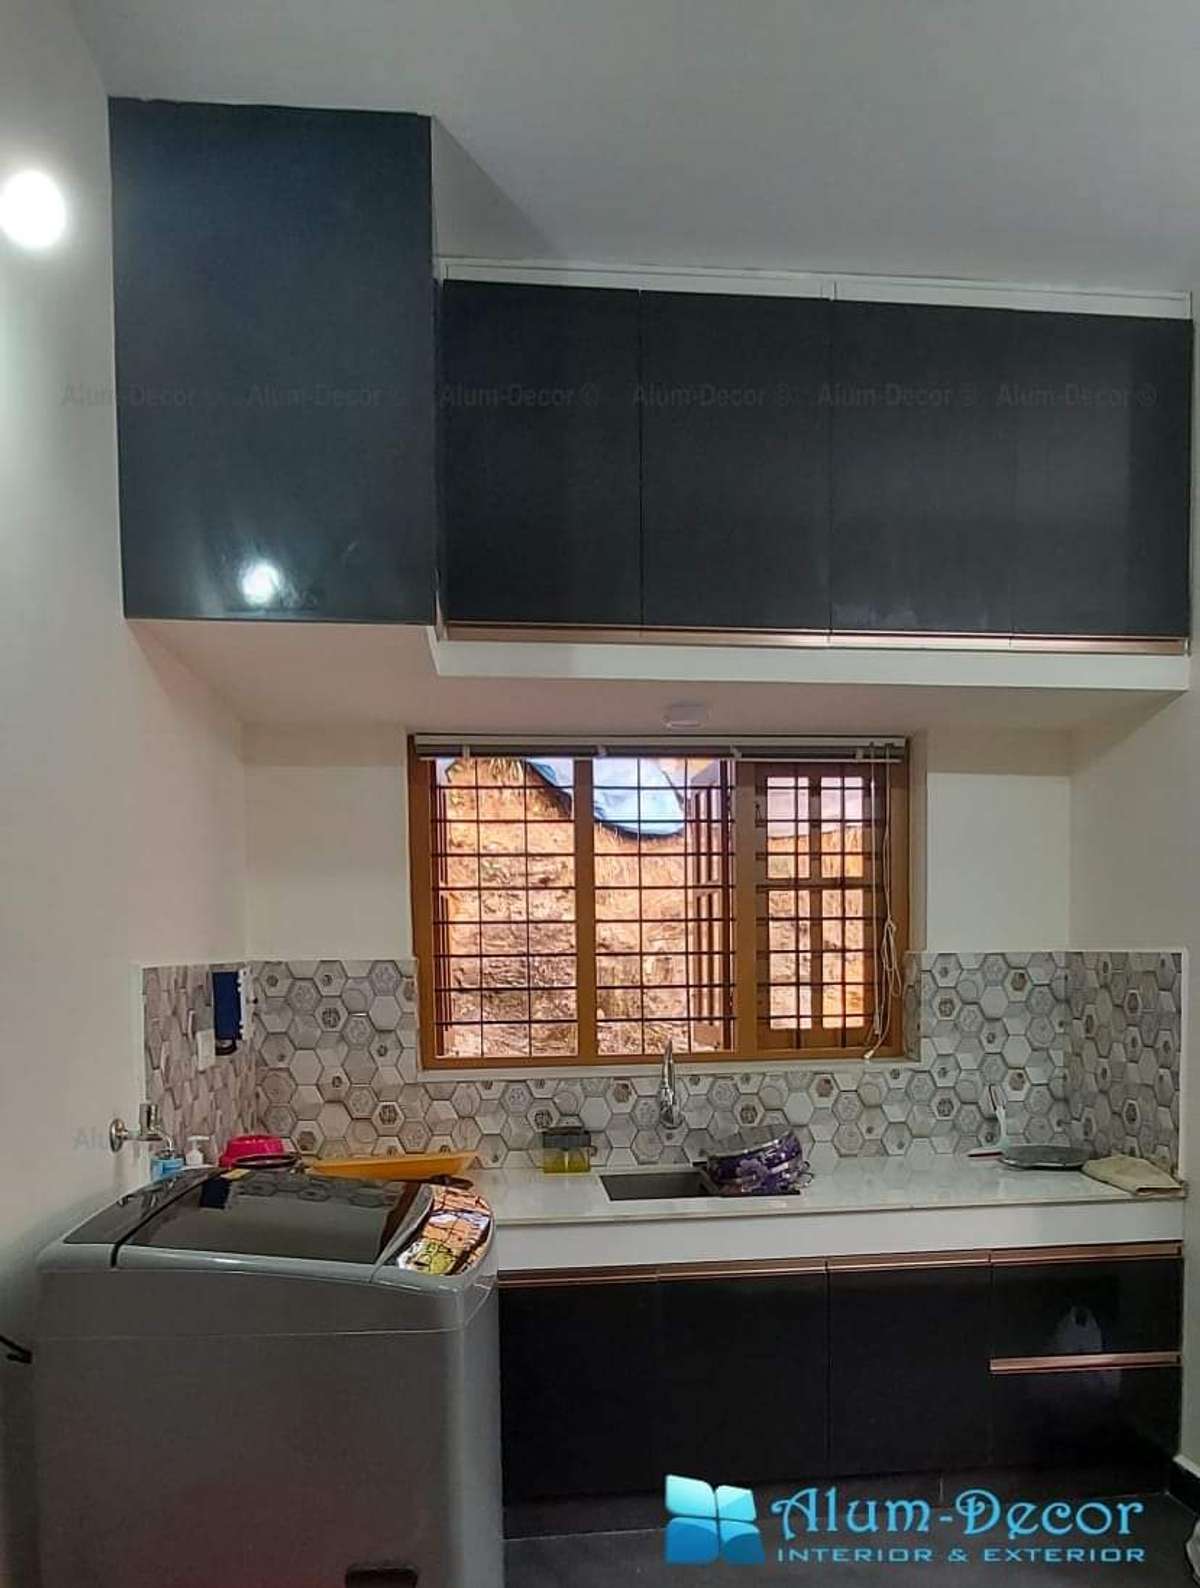 Kitchen, Storage Designs by Carpenter ЁЯЩП рдлреЙрд▓реЛ рдХрд░реЛ рджрд┐рд▓реНрд▓реА рдХрд╛рд░рдкреЗрдВрдЯрд░ рдХреЛ, Delhi | Kolo